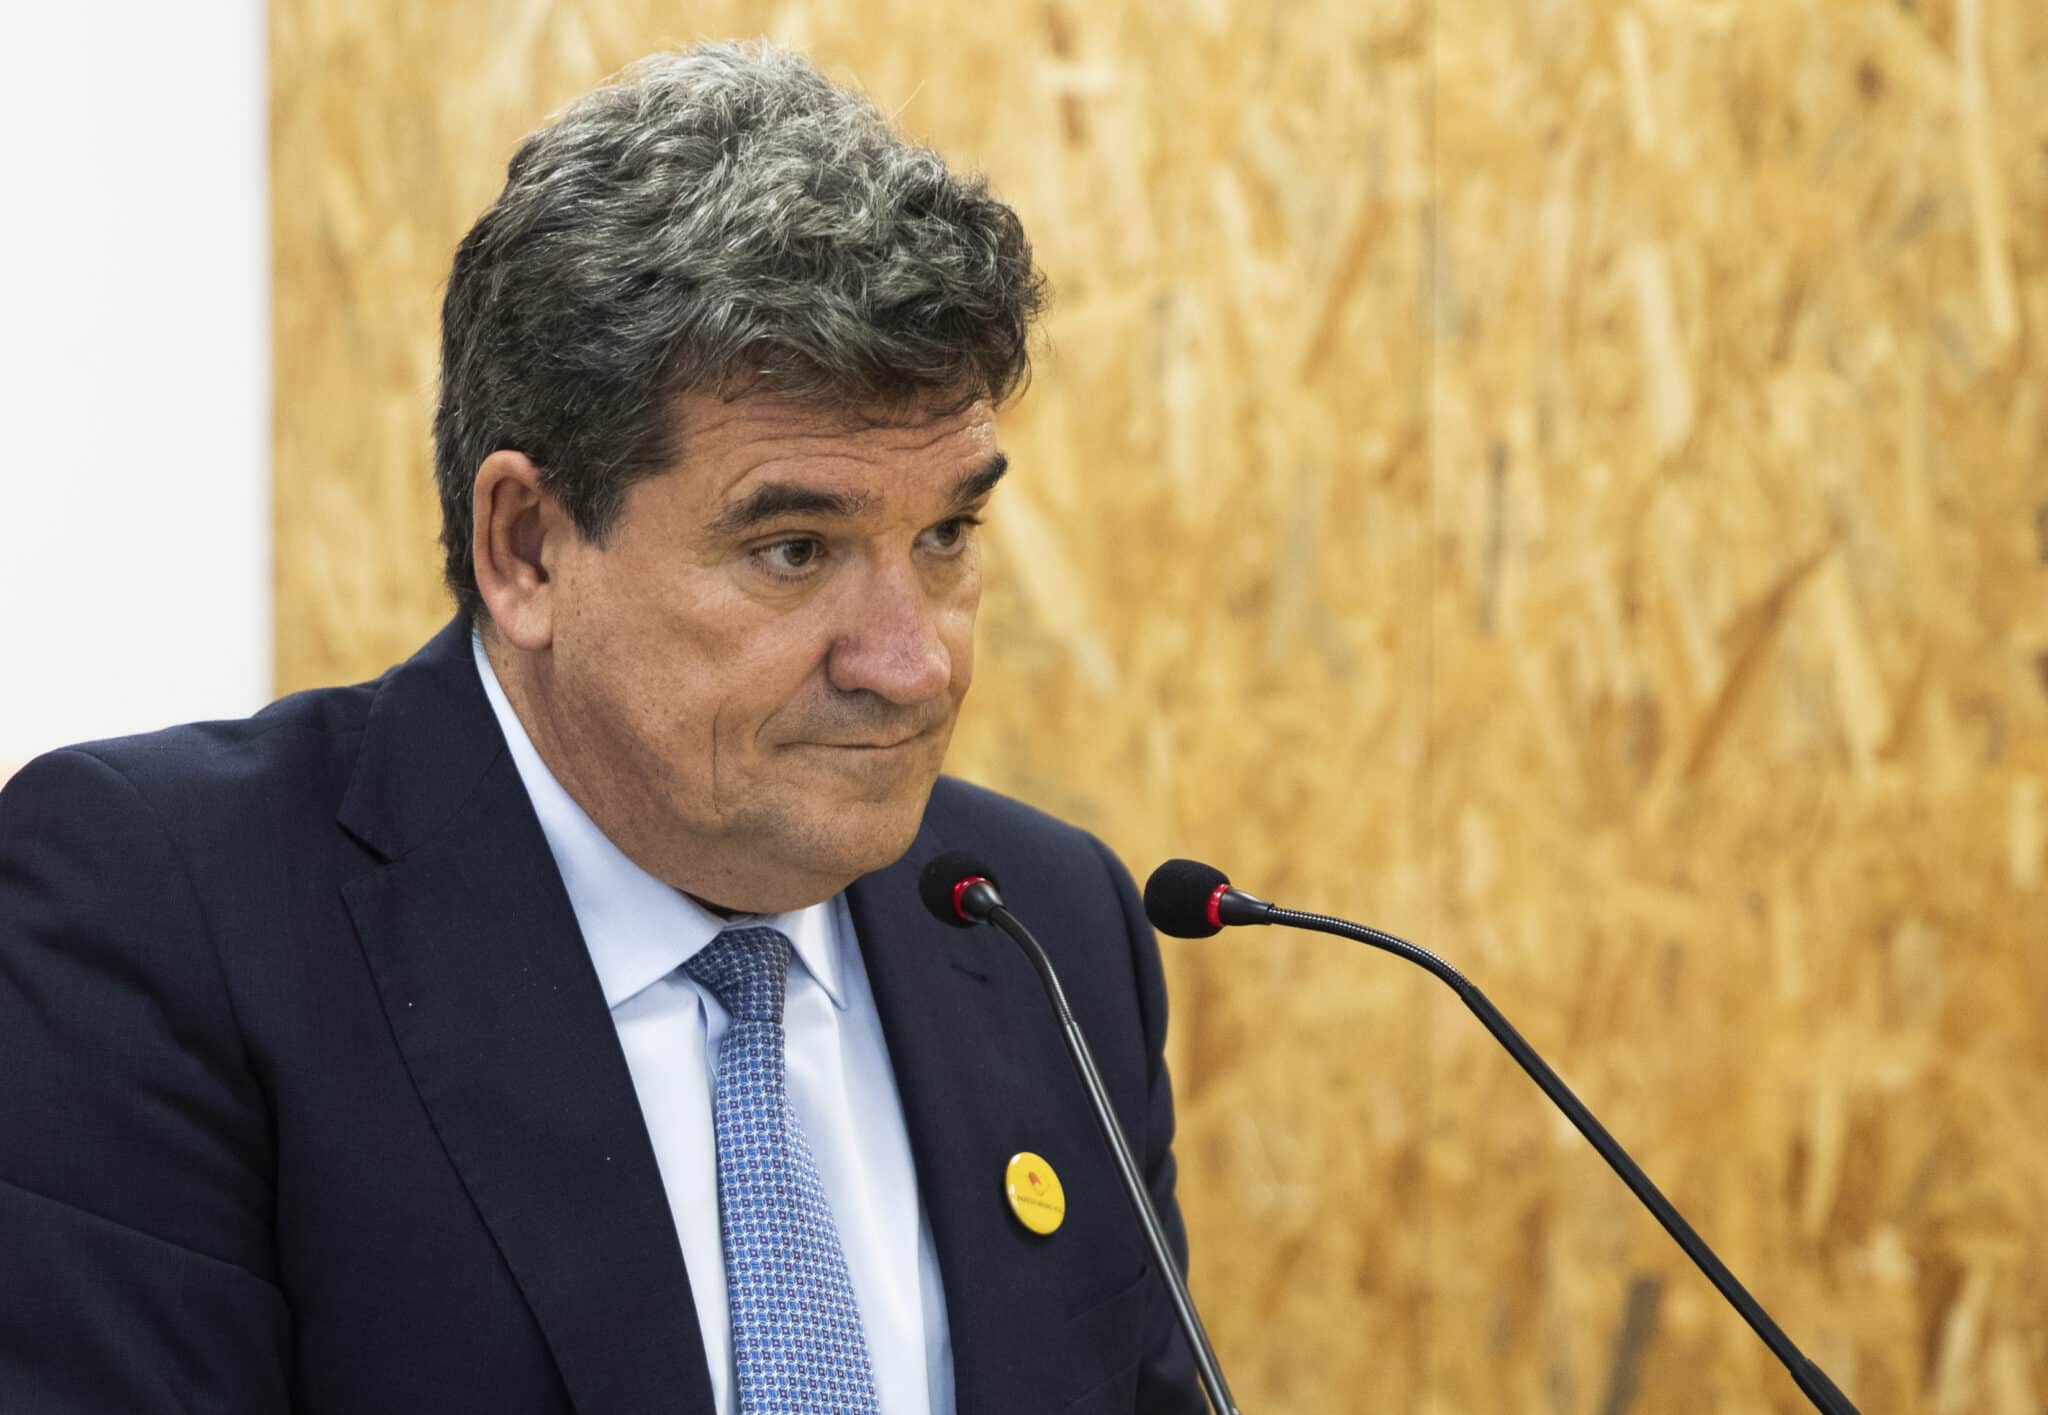 El ministro de Inclusión, Seguridad Social y Migraciones, José Luis Escrivá, atiende a los medios de comunicación. Imagen de archivo.